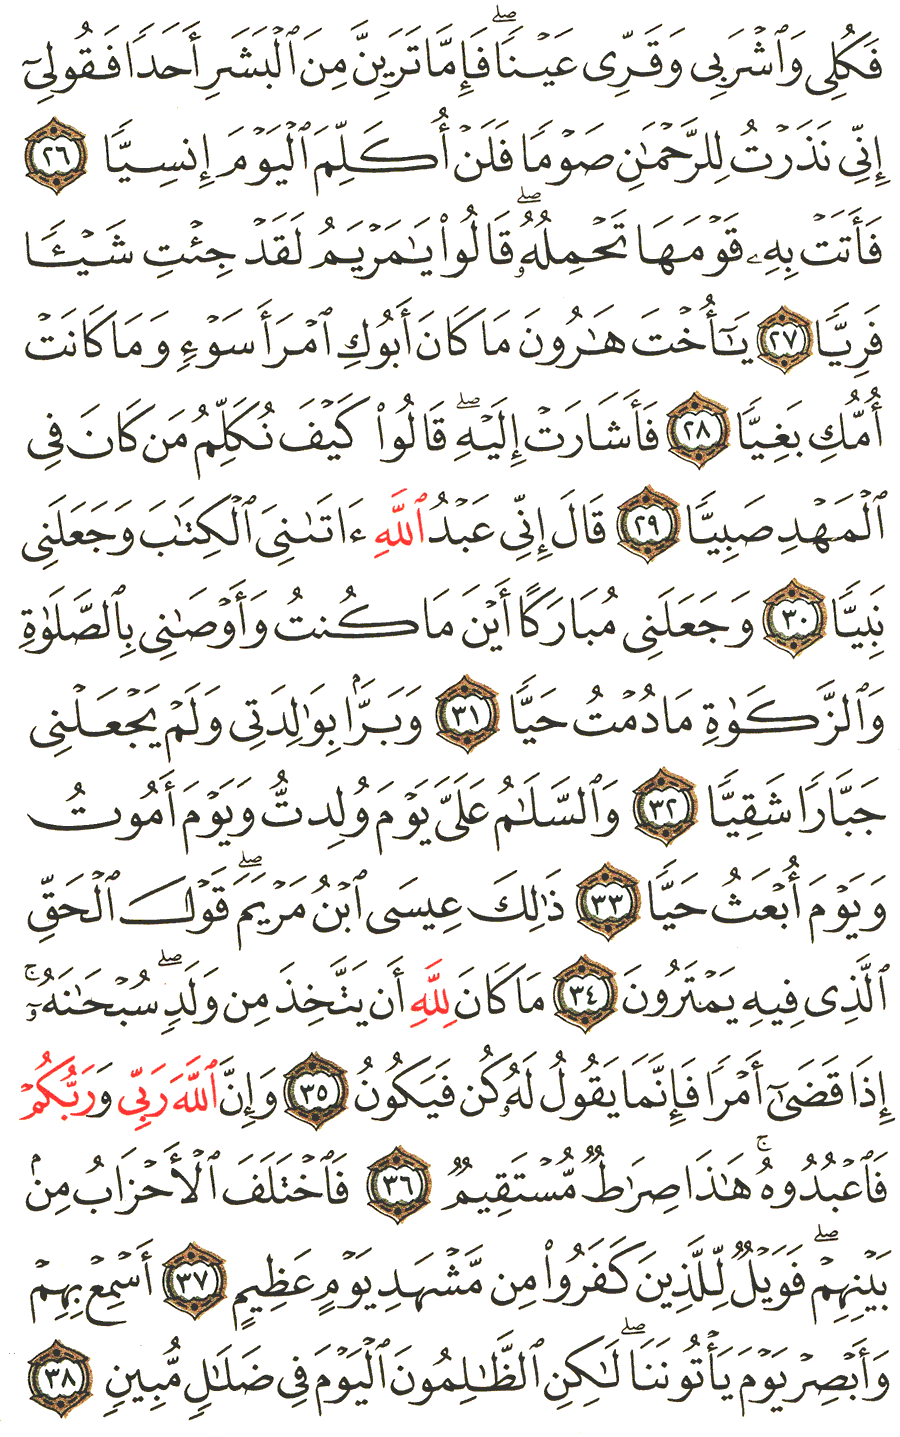 الصفحة رقم 307  من القرآن الكريم مكتوبة من المصحف